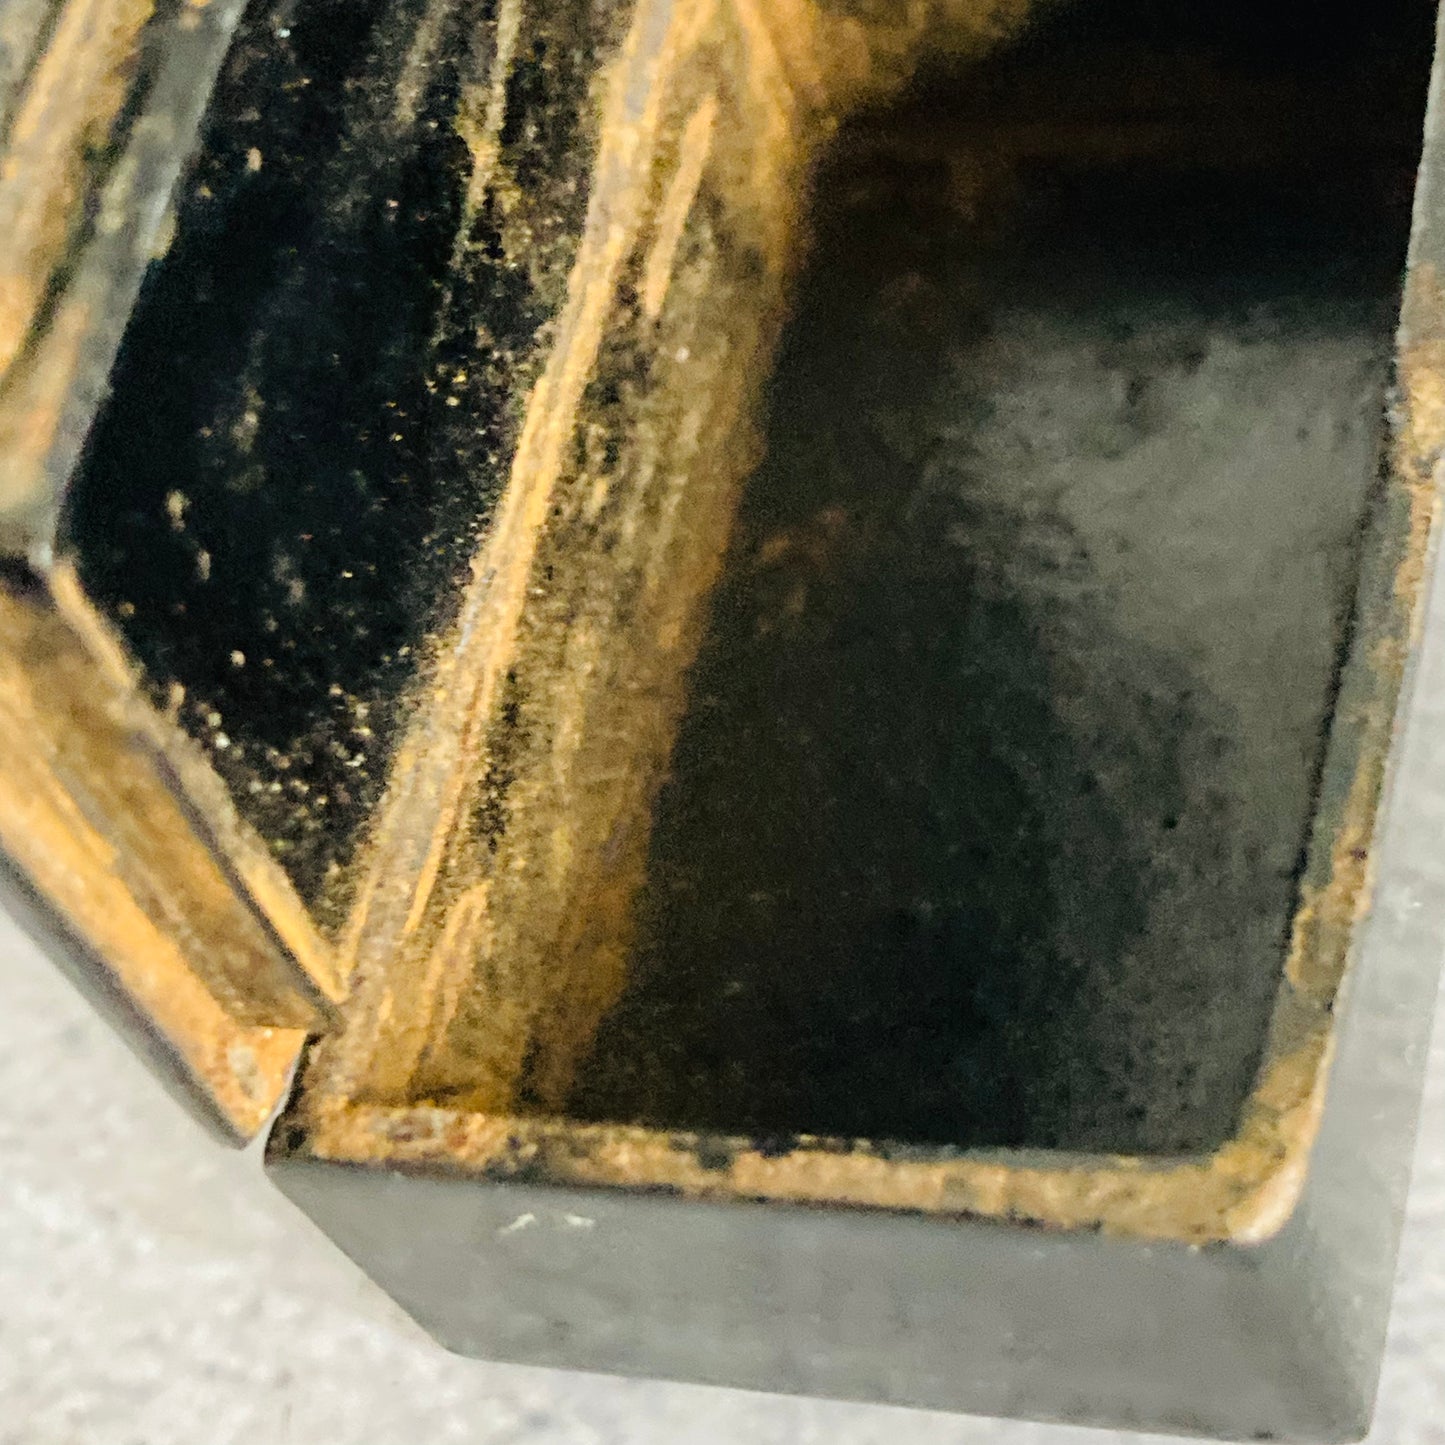 Antique Paper Mache Black Lacquer Snuff Box